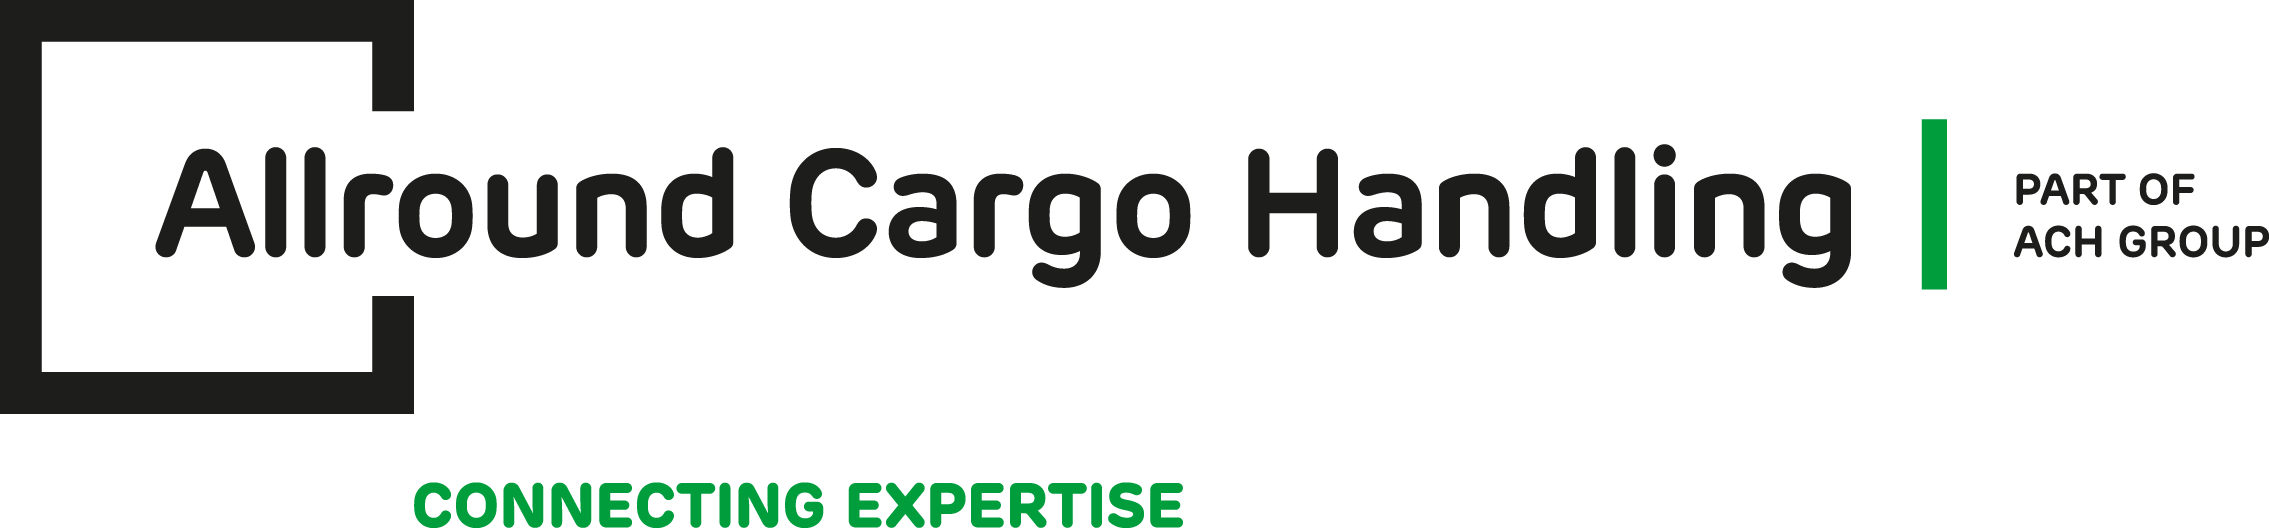 Allround Cargo Handling logo